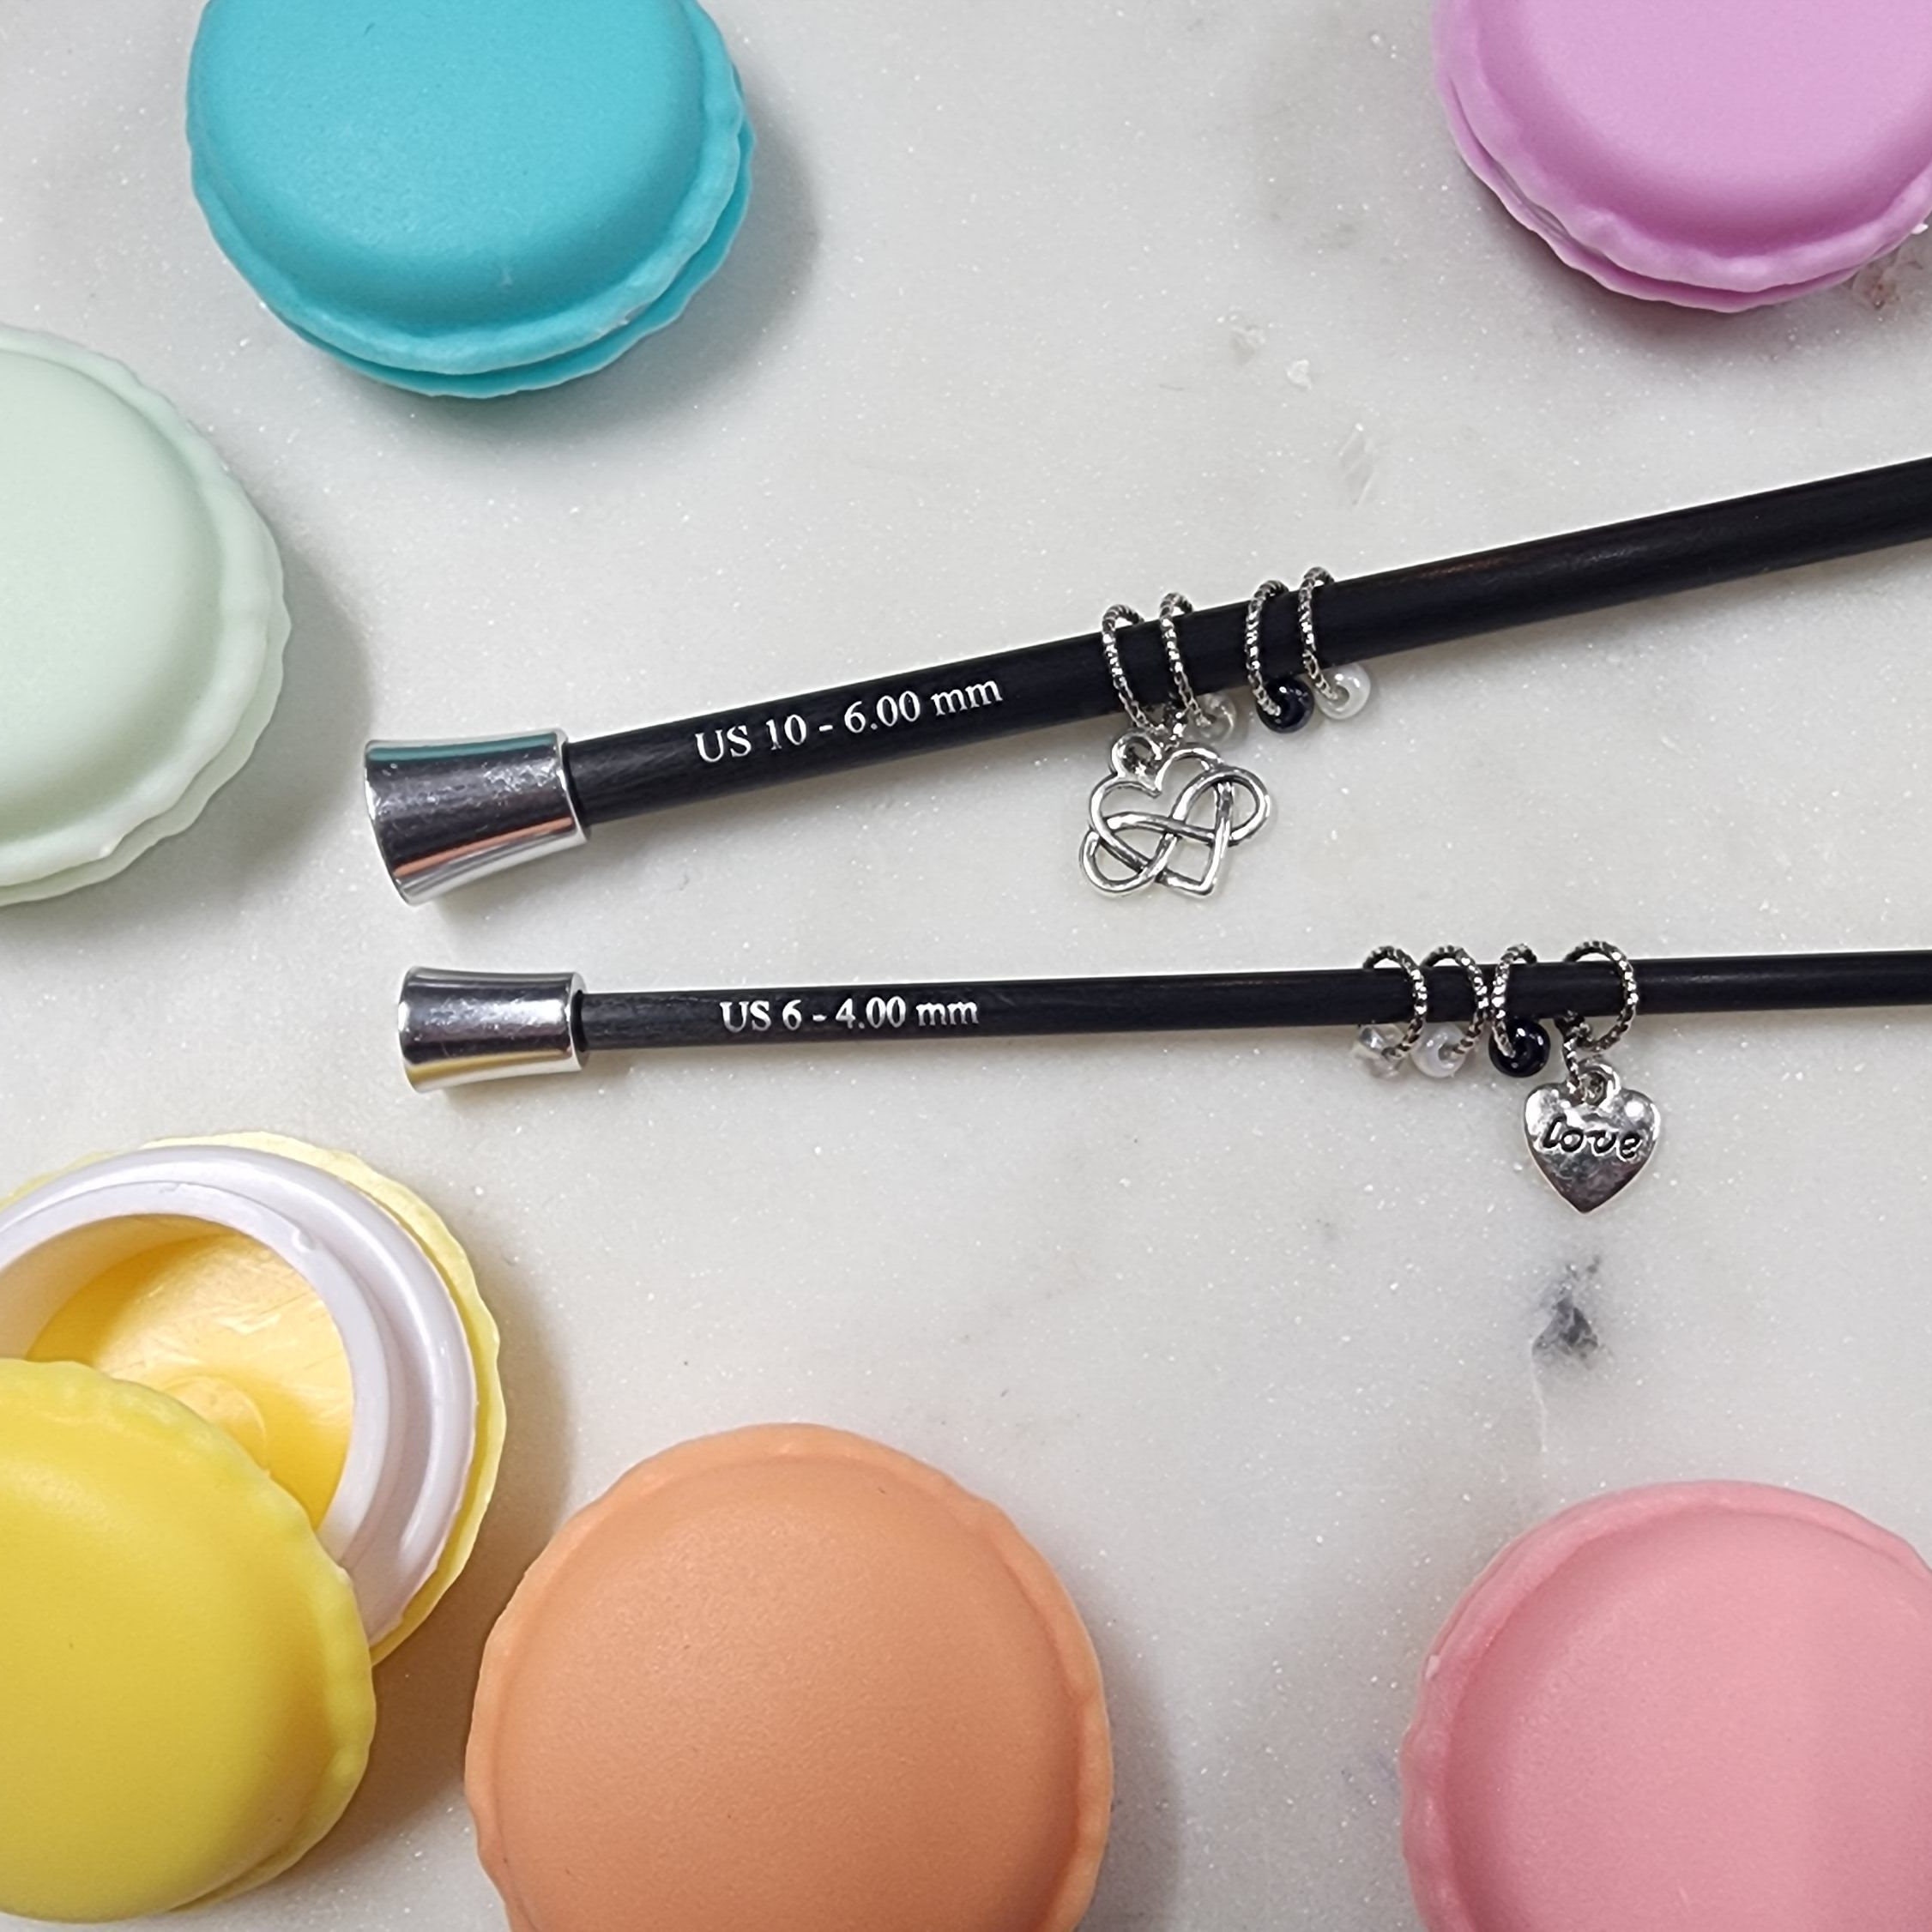 Swatch Form: Kalour Colored Pencils Macaron Set 50pc. 